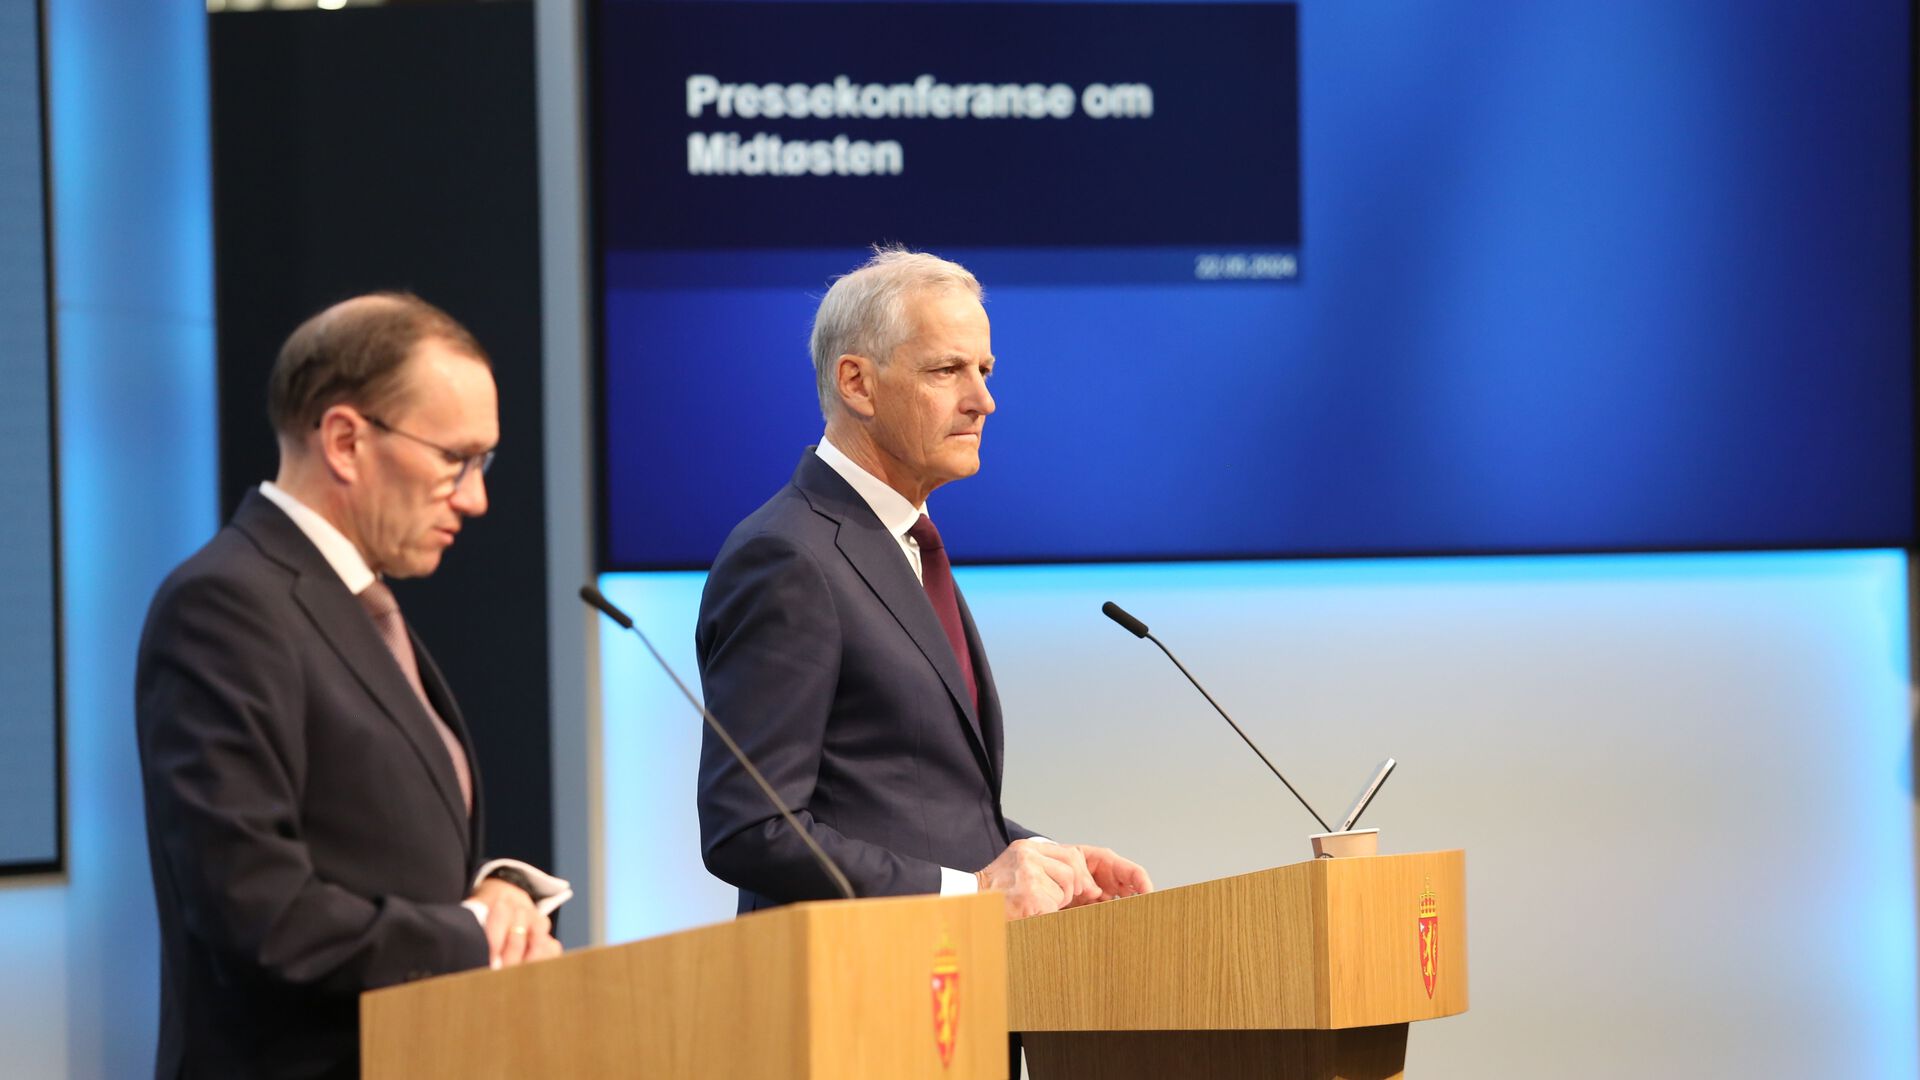 Utenriksministeren og statsministeren står bak hver sin talerstol med mikrofo. På veggen bak er en skjerm med teksten Pressekonferanse om Midtøsten